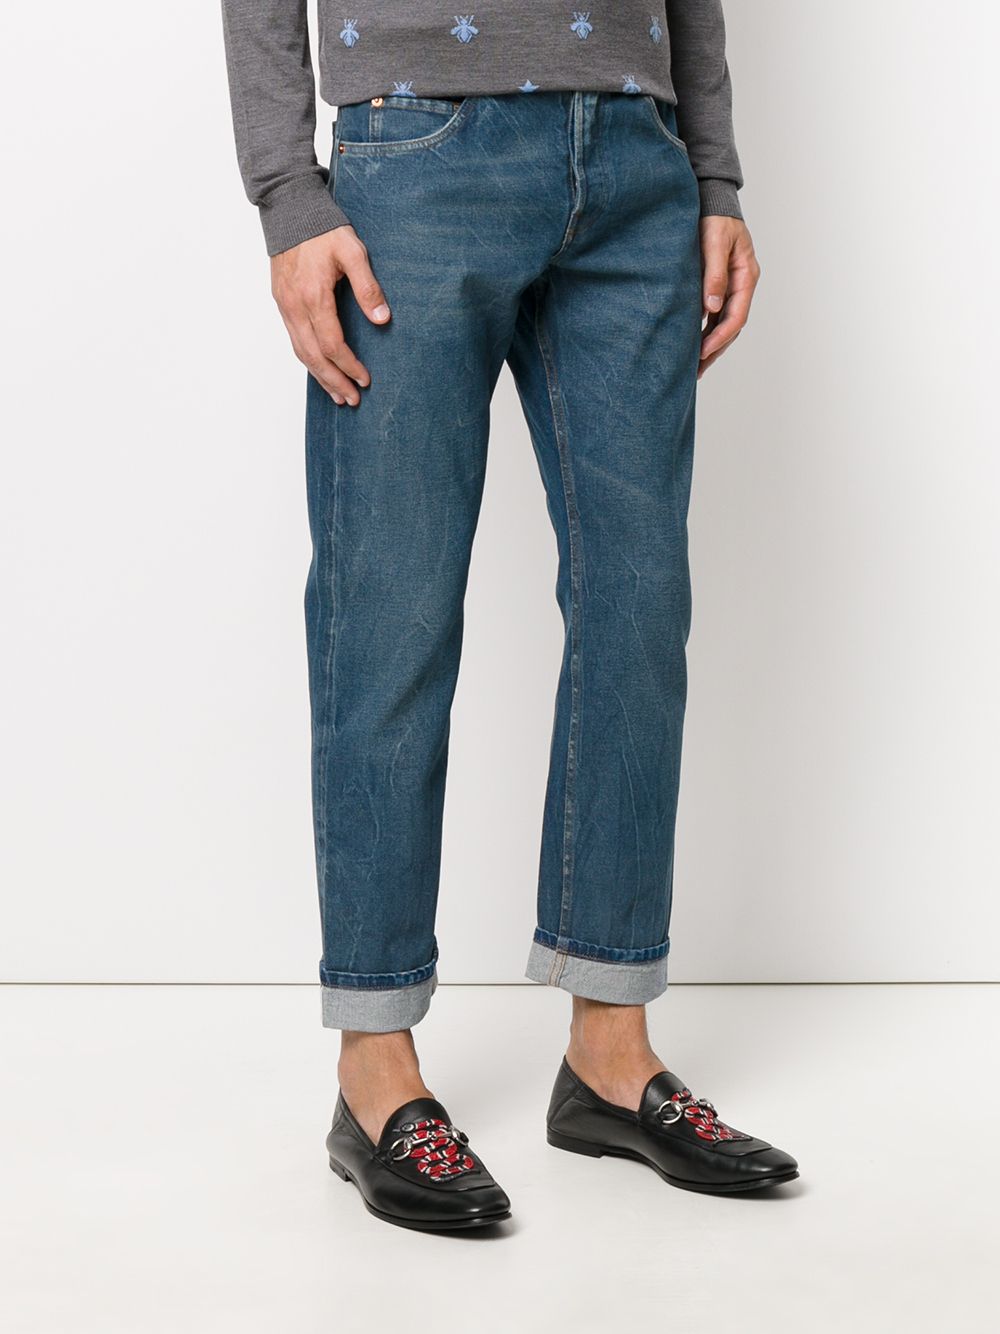 фото Gucci зауженные джинсы с вышивкой